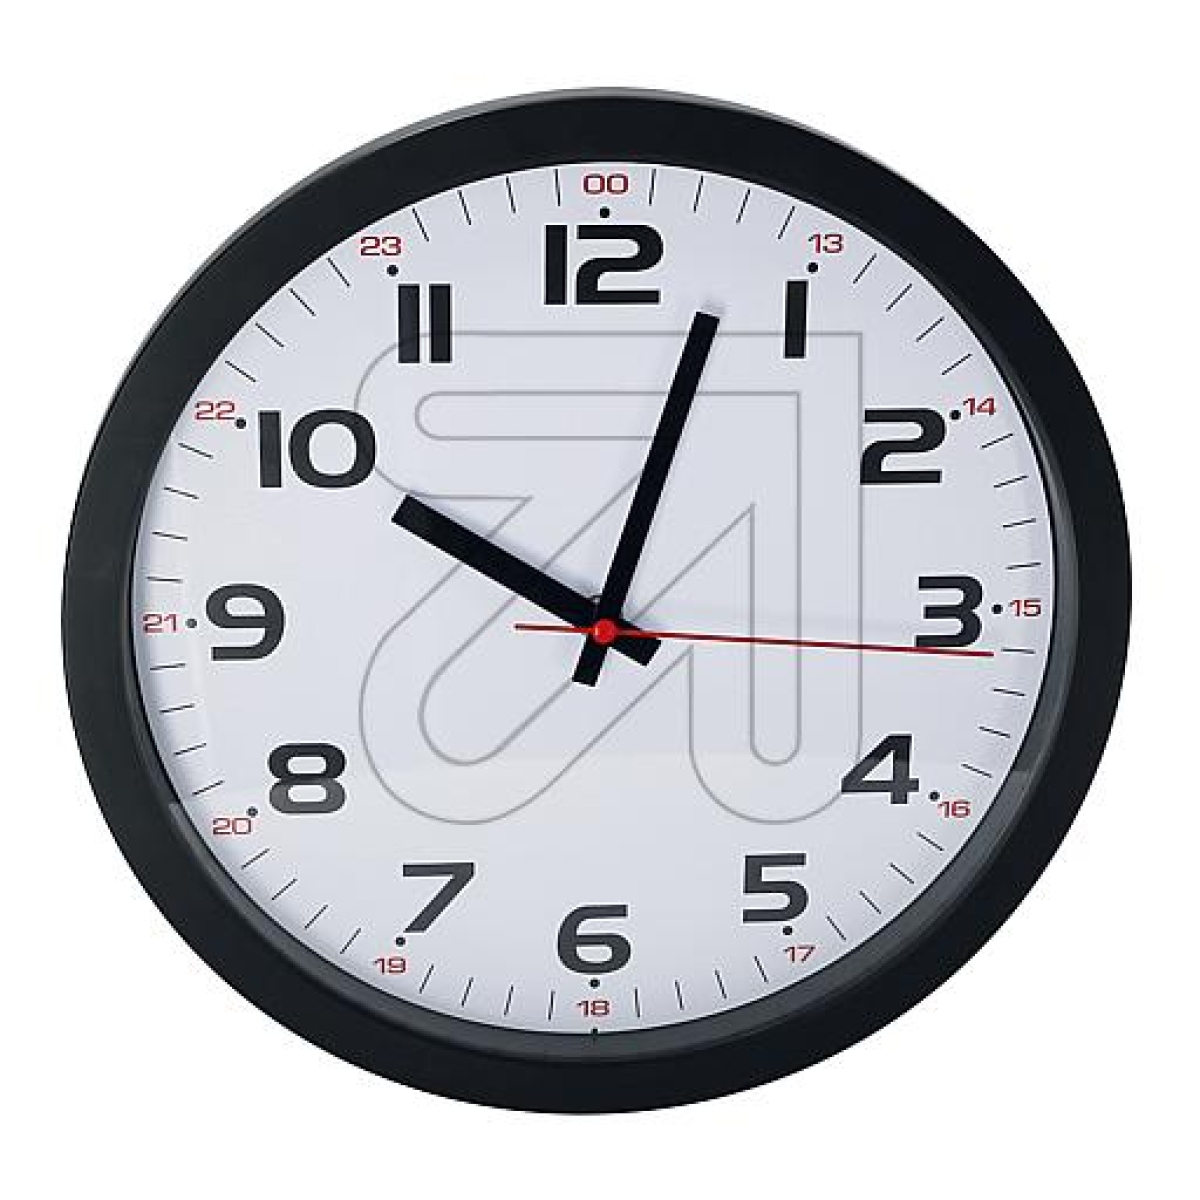 TFAQuartz wall clock 305 mm black 60.3050.01Article-No: 322630